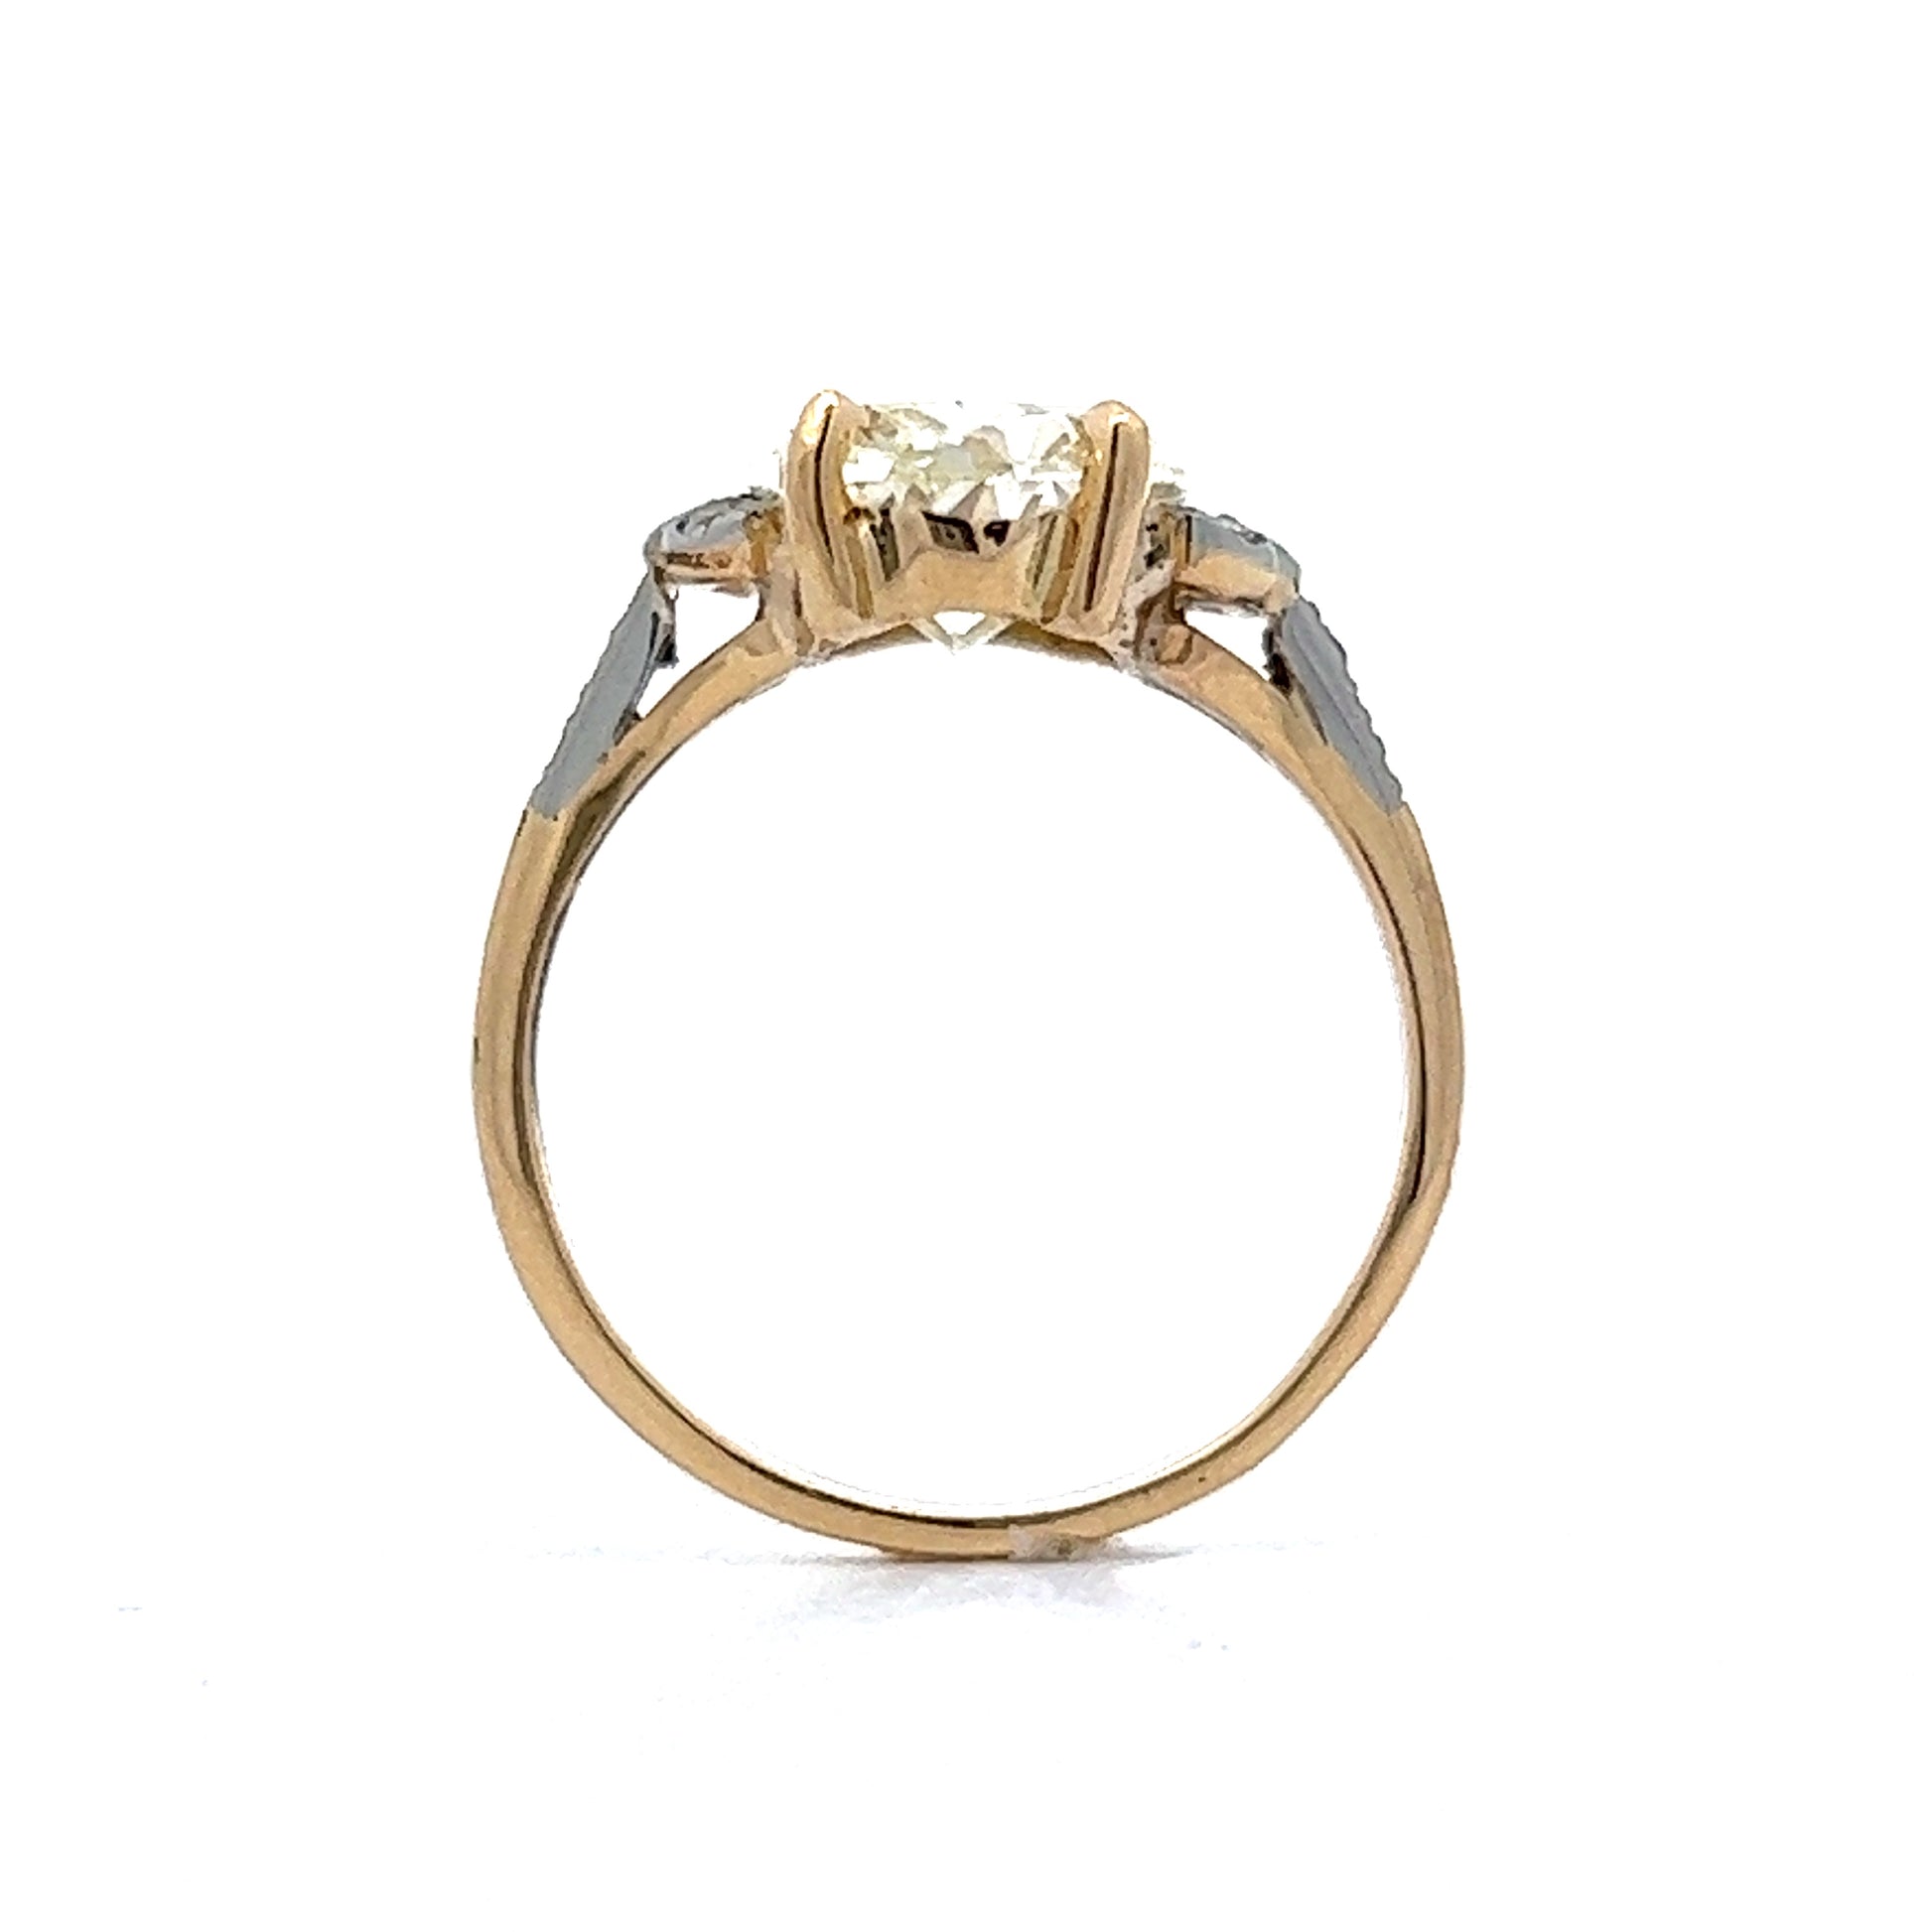 3 Carat Edwardian Cushion Cut Engagement Ring in 14k Yellow & White Gold